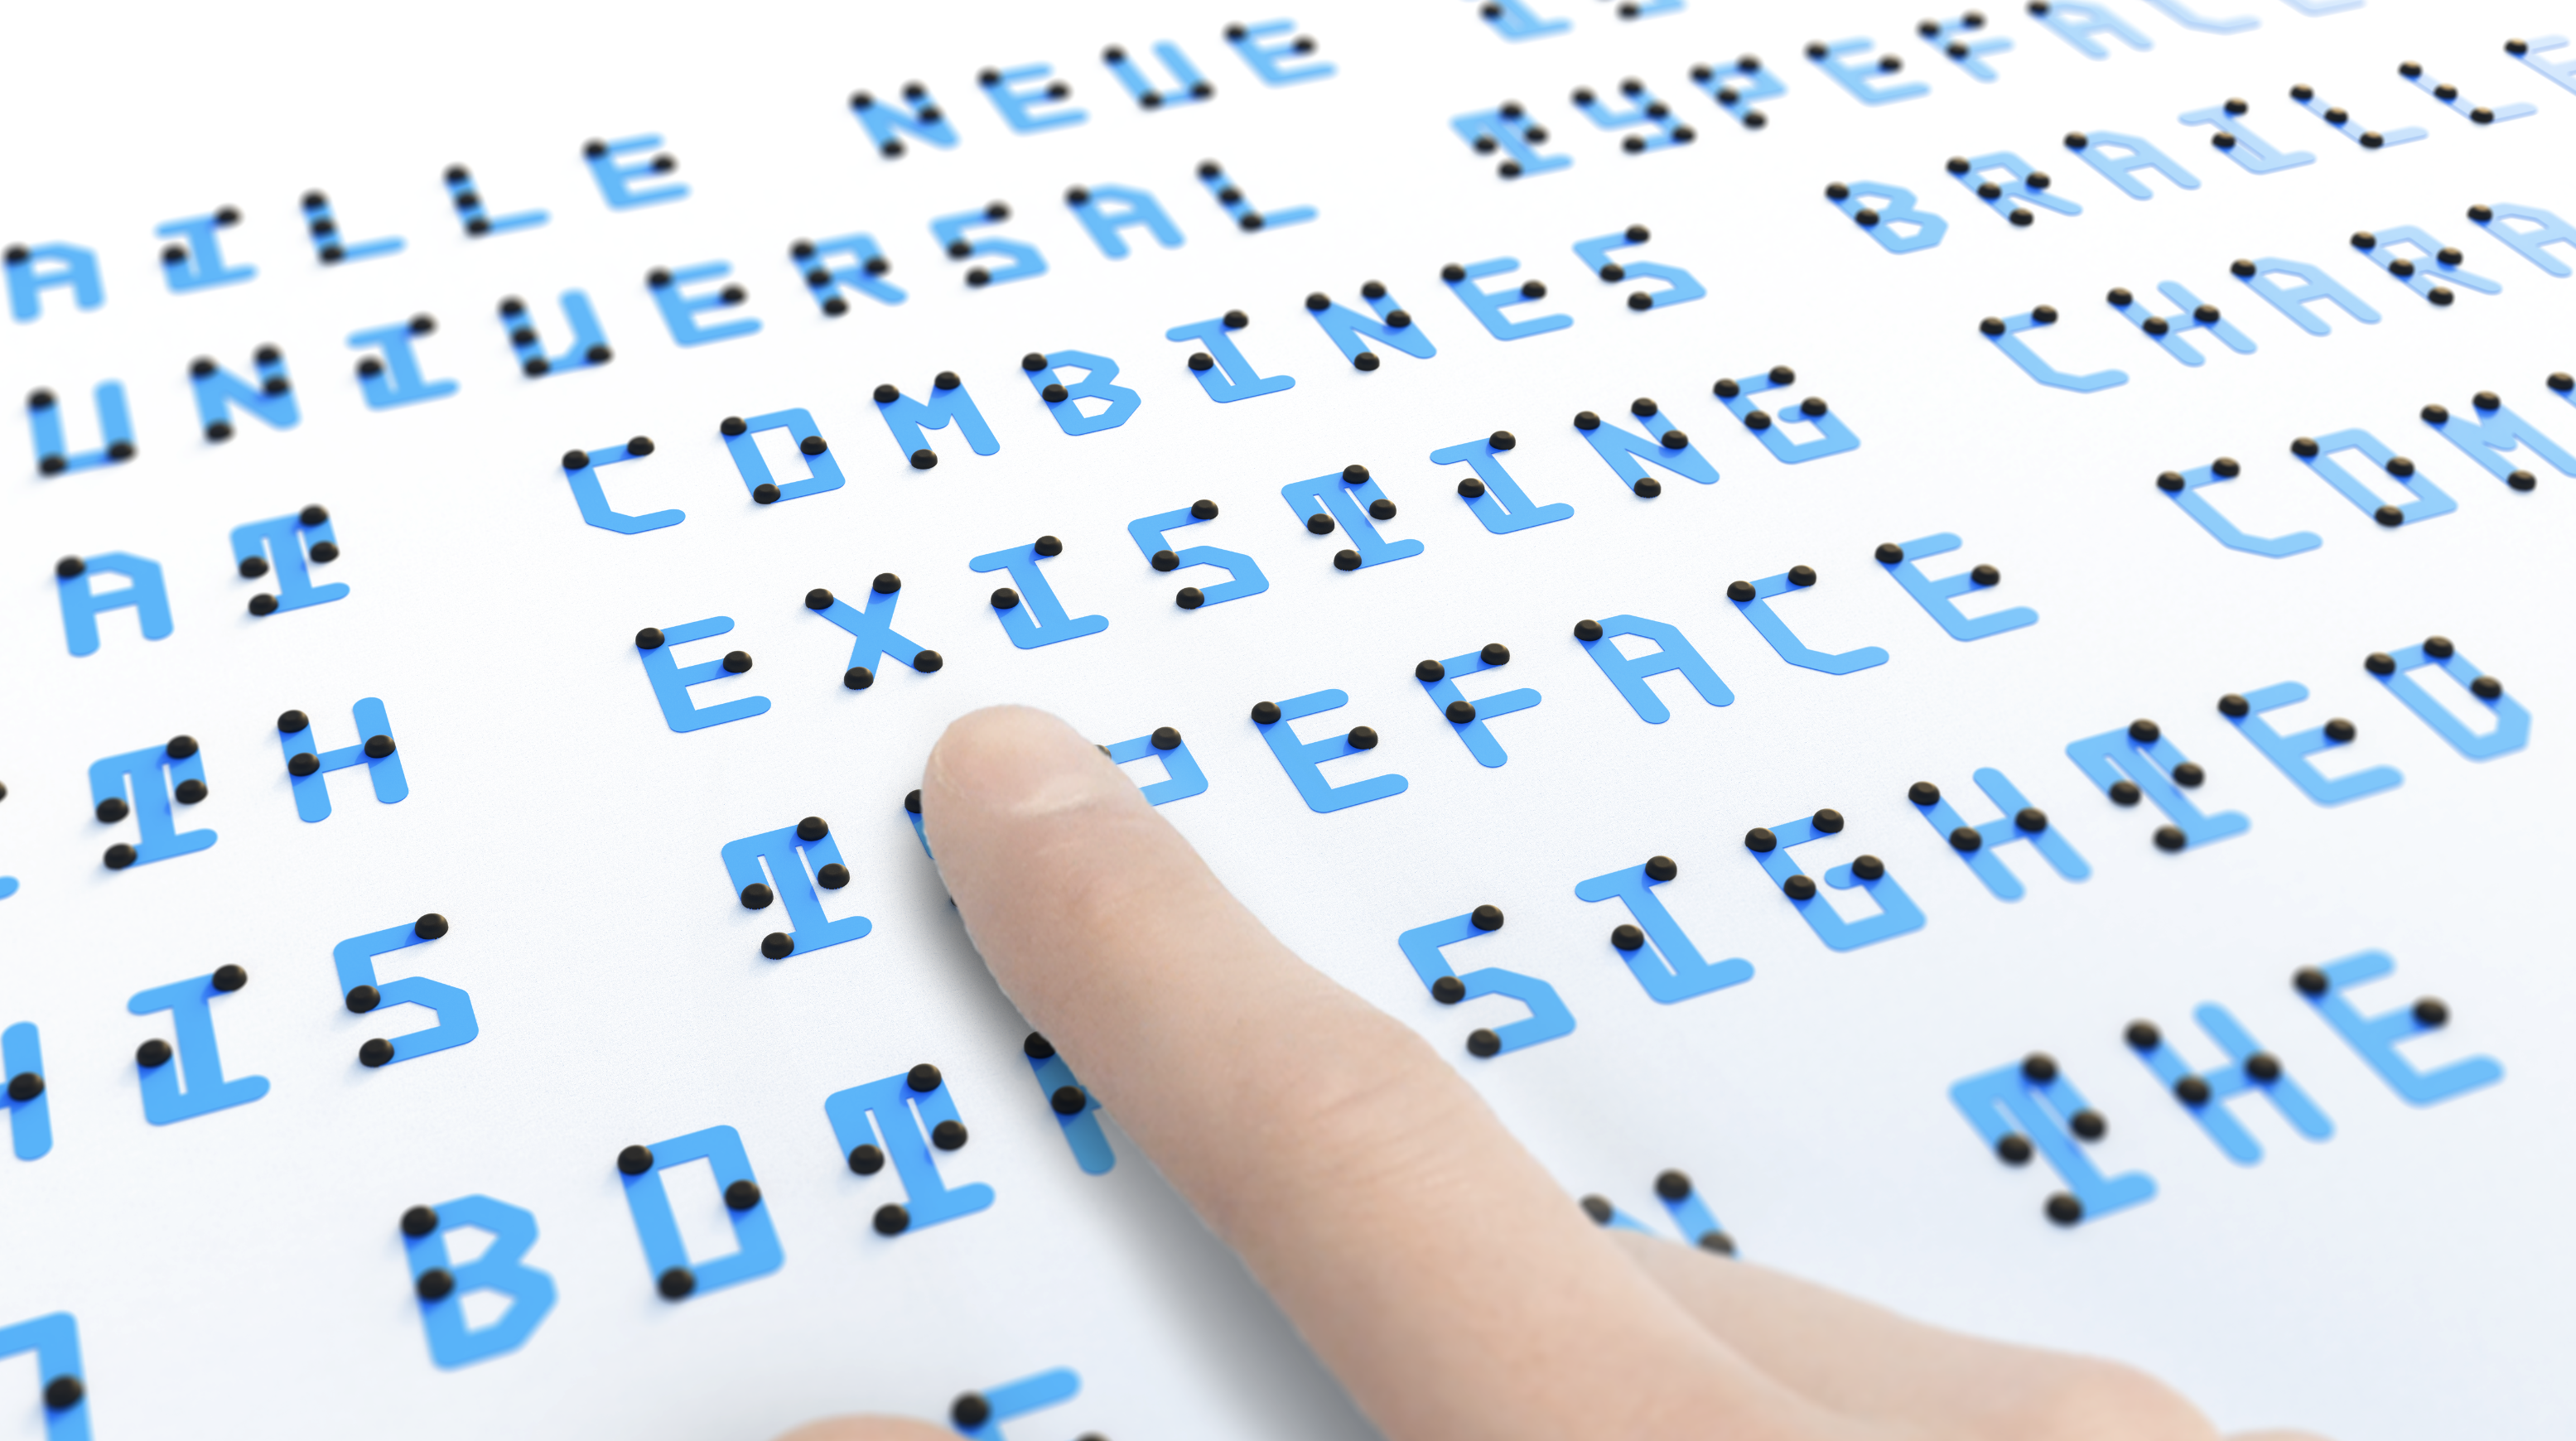 晴眼者も、視覚障害者も。ニュータイプのユニバーサル点字フォント「Braille Neue」開発者に聞く